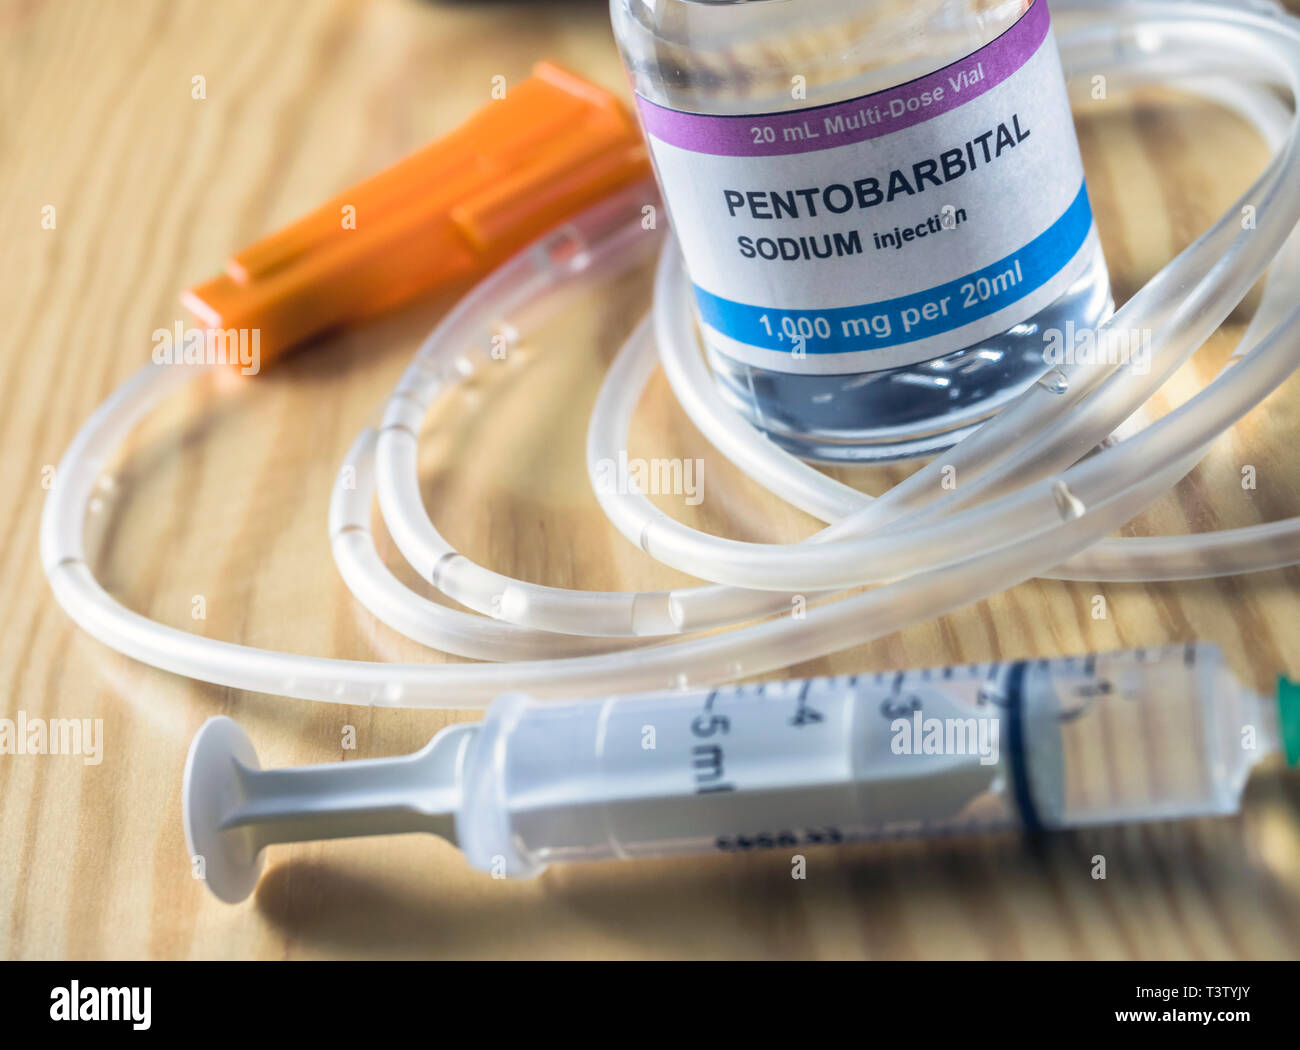 Flaconcino con pentobarbital sodio iniezione usata per eutanasia e inyecion letali in un ospedale, immagine concettuale Foto Stock